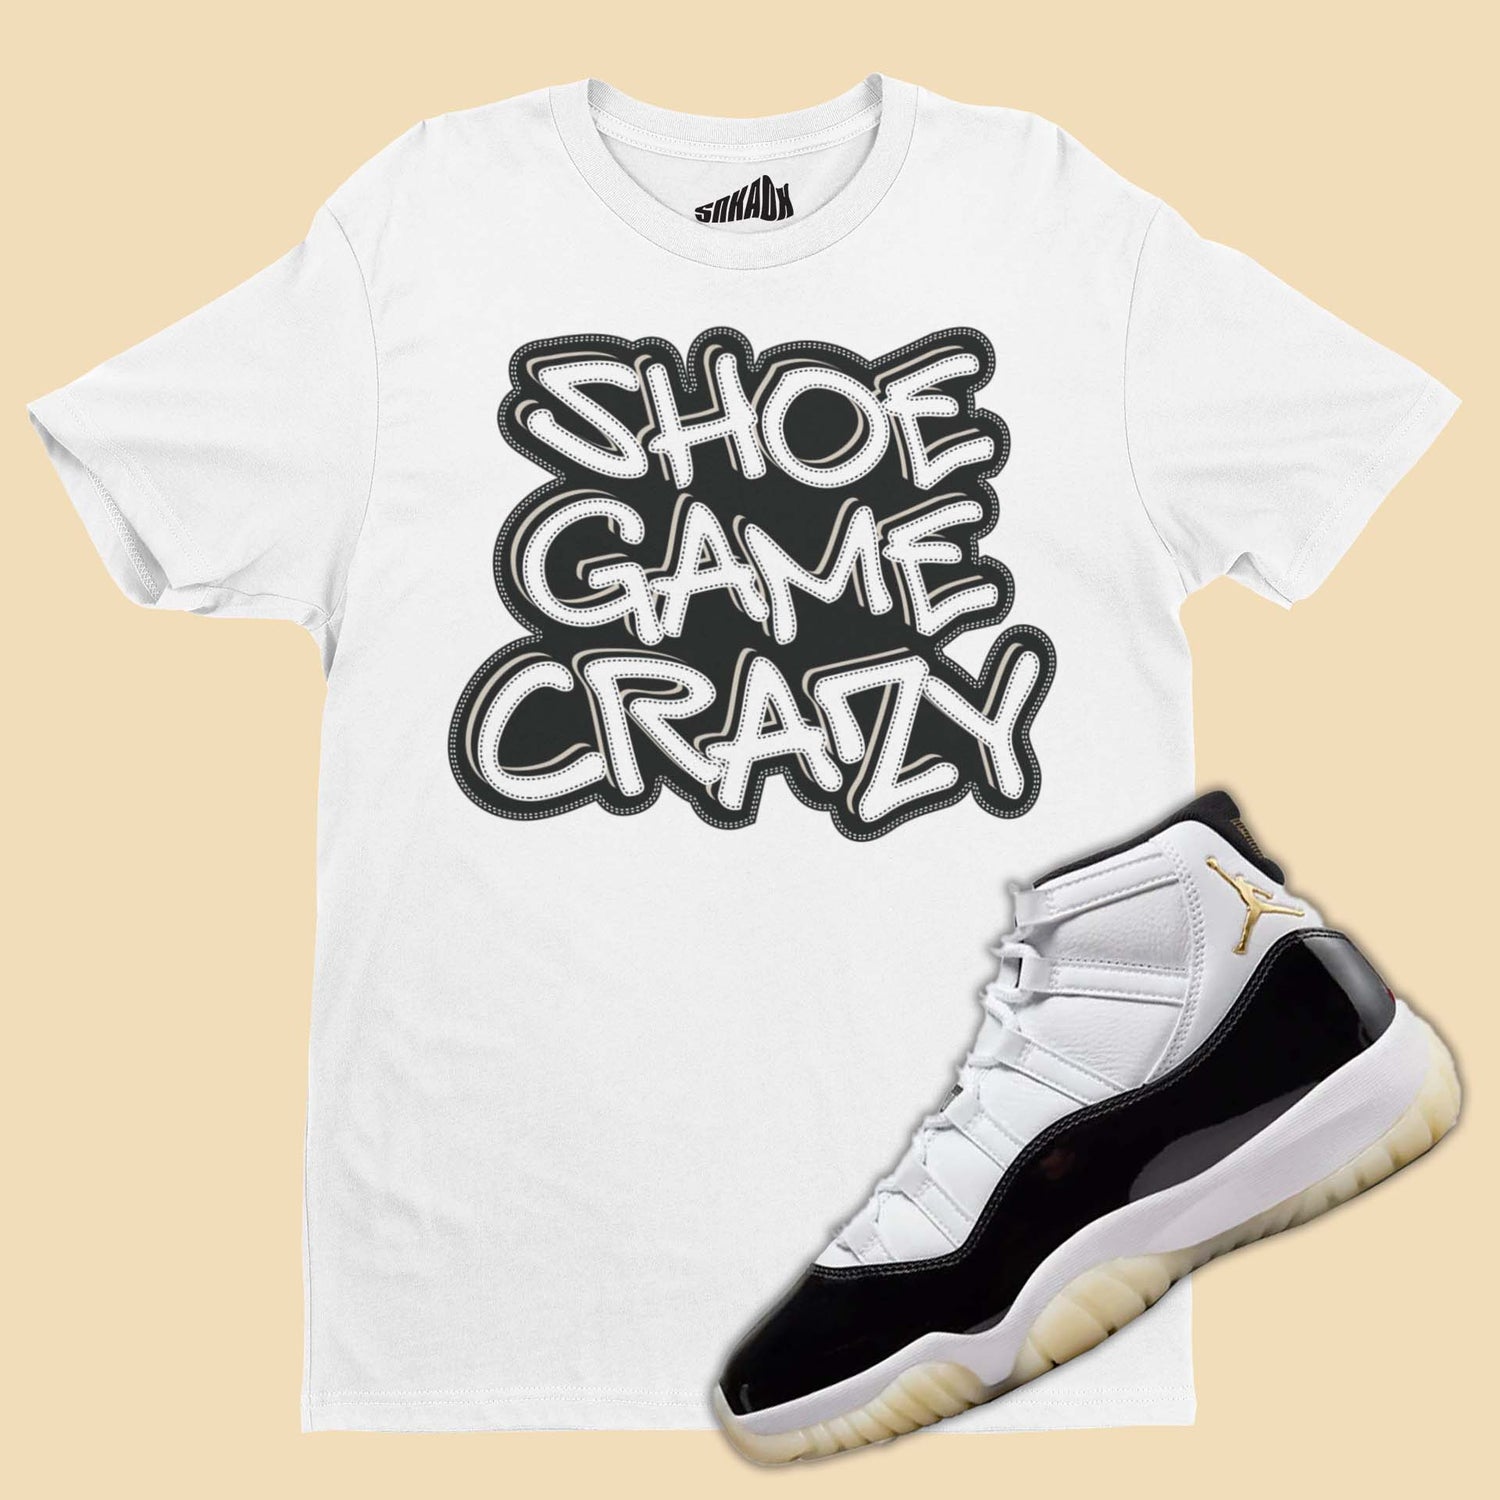 Shoe Game Crazy T-Shirt Matching Air Jordan 11 Gratitude